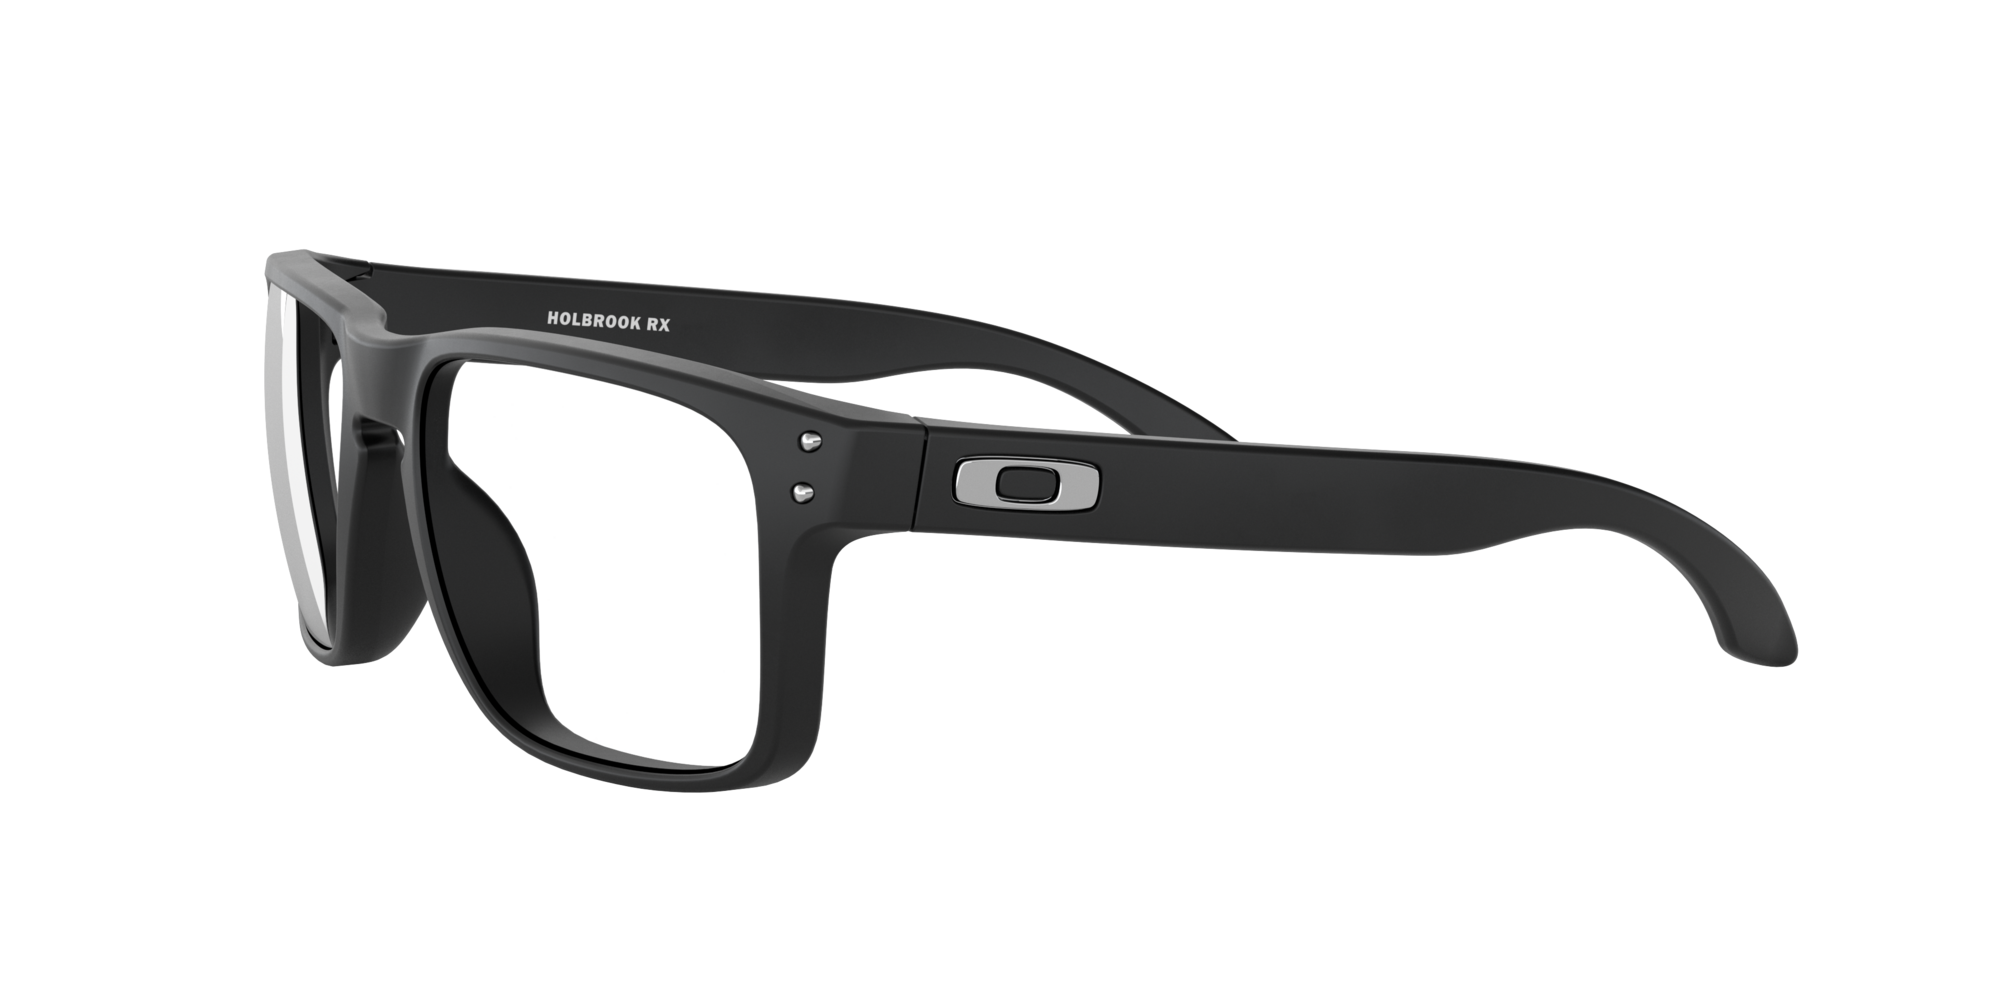 Das Bild zeigt die Korrektionsbrille OX8156 815601 von der Marke Oakley  in schwarz satiniert.